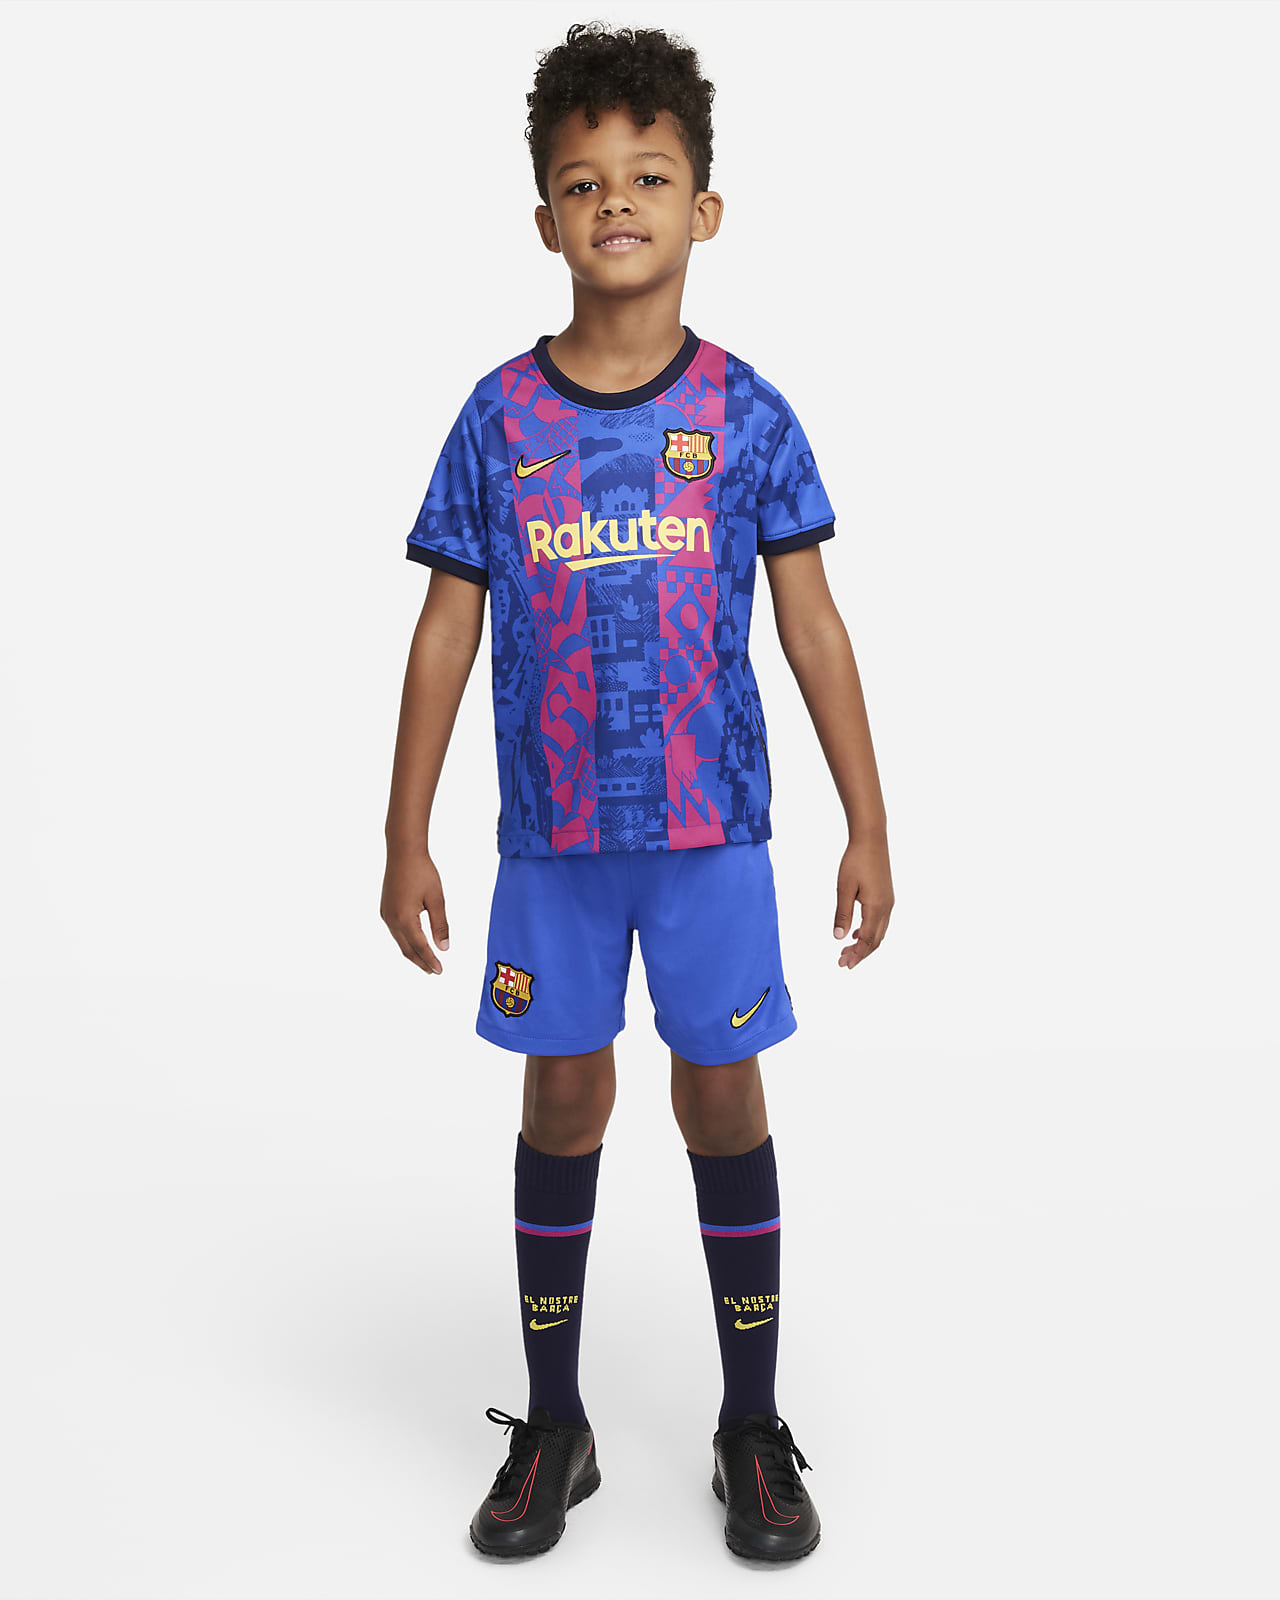 Station Ciro Clam FC Barcelona 2021/22 Third Little Kids' Soccer Kit. Nike.com